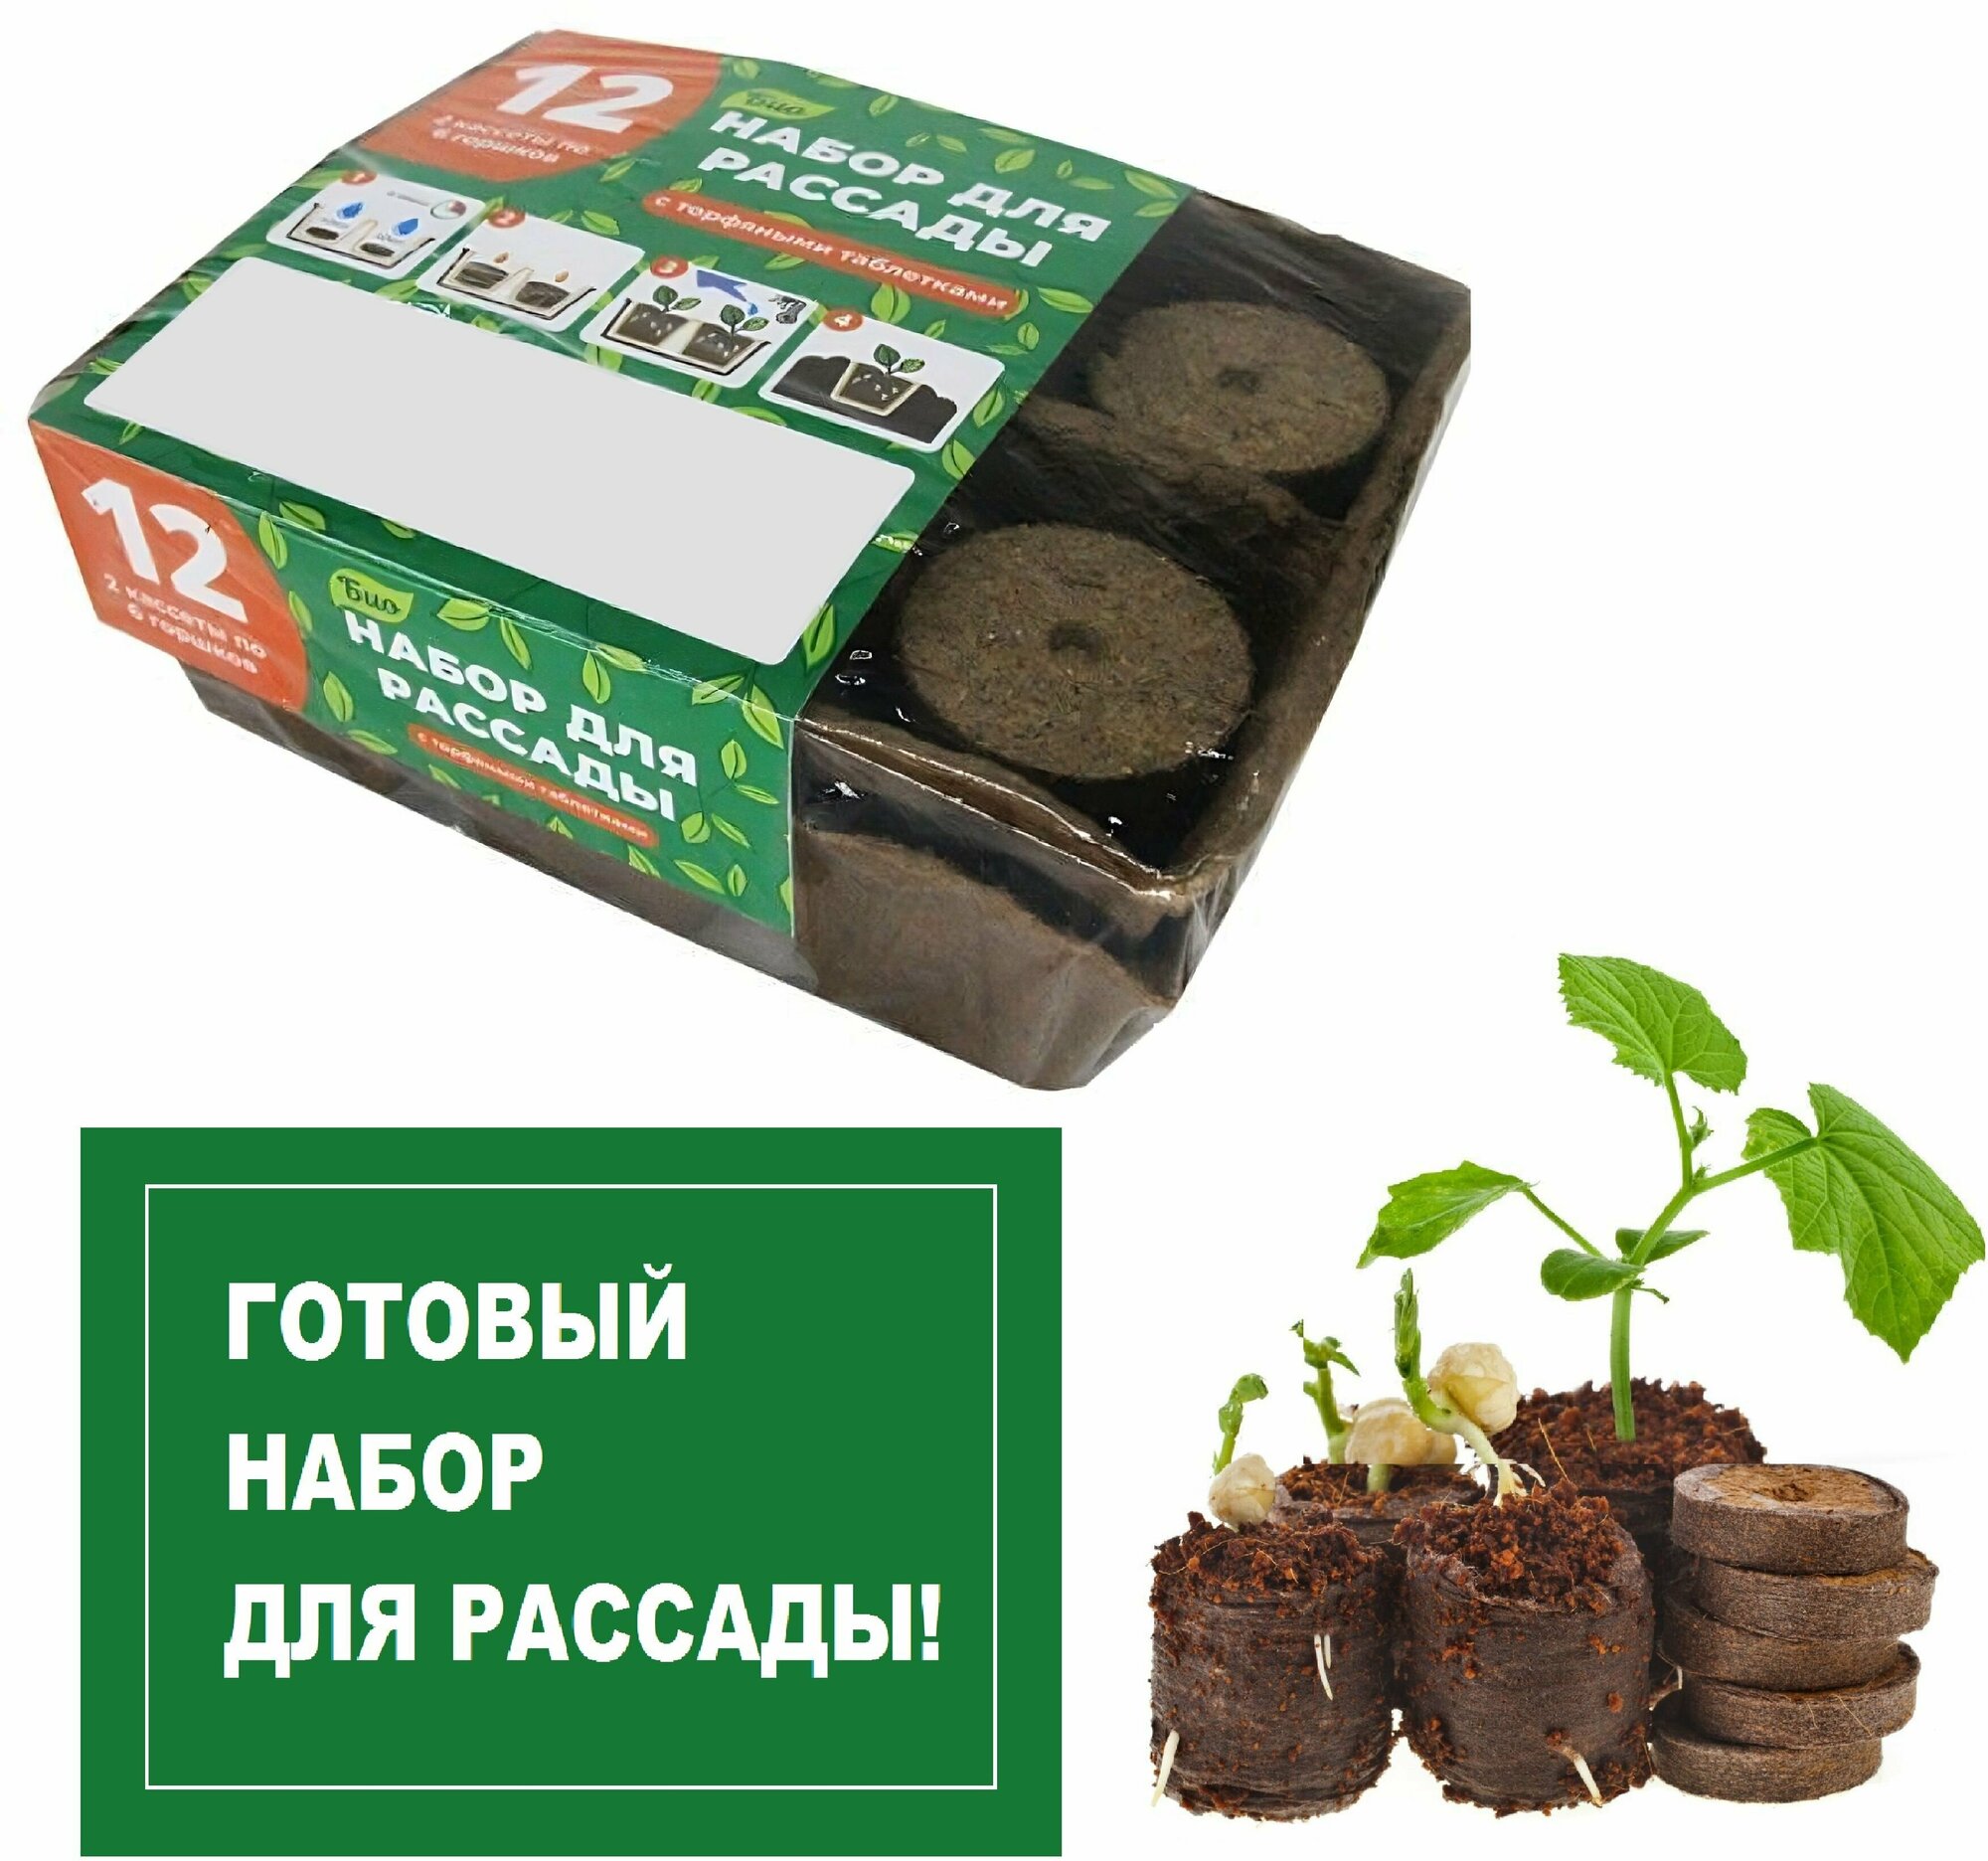 Комплект для рассады торфяной 12 ячеек (2 кассеты х 6 горшков). Питательная среда для выращивания плодовых овощных ягодных и декоративных культур